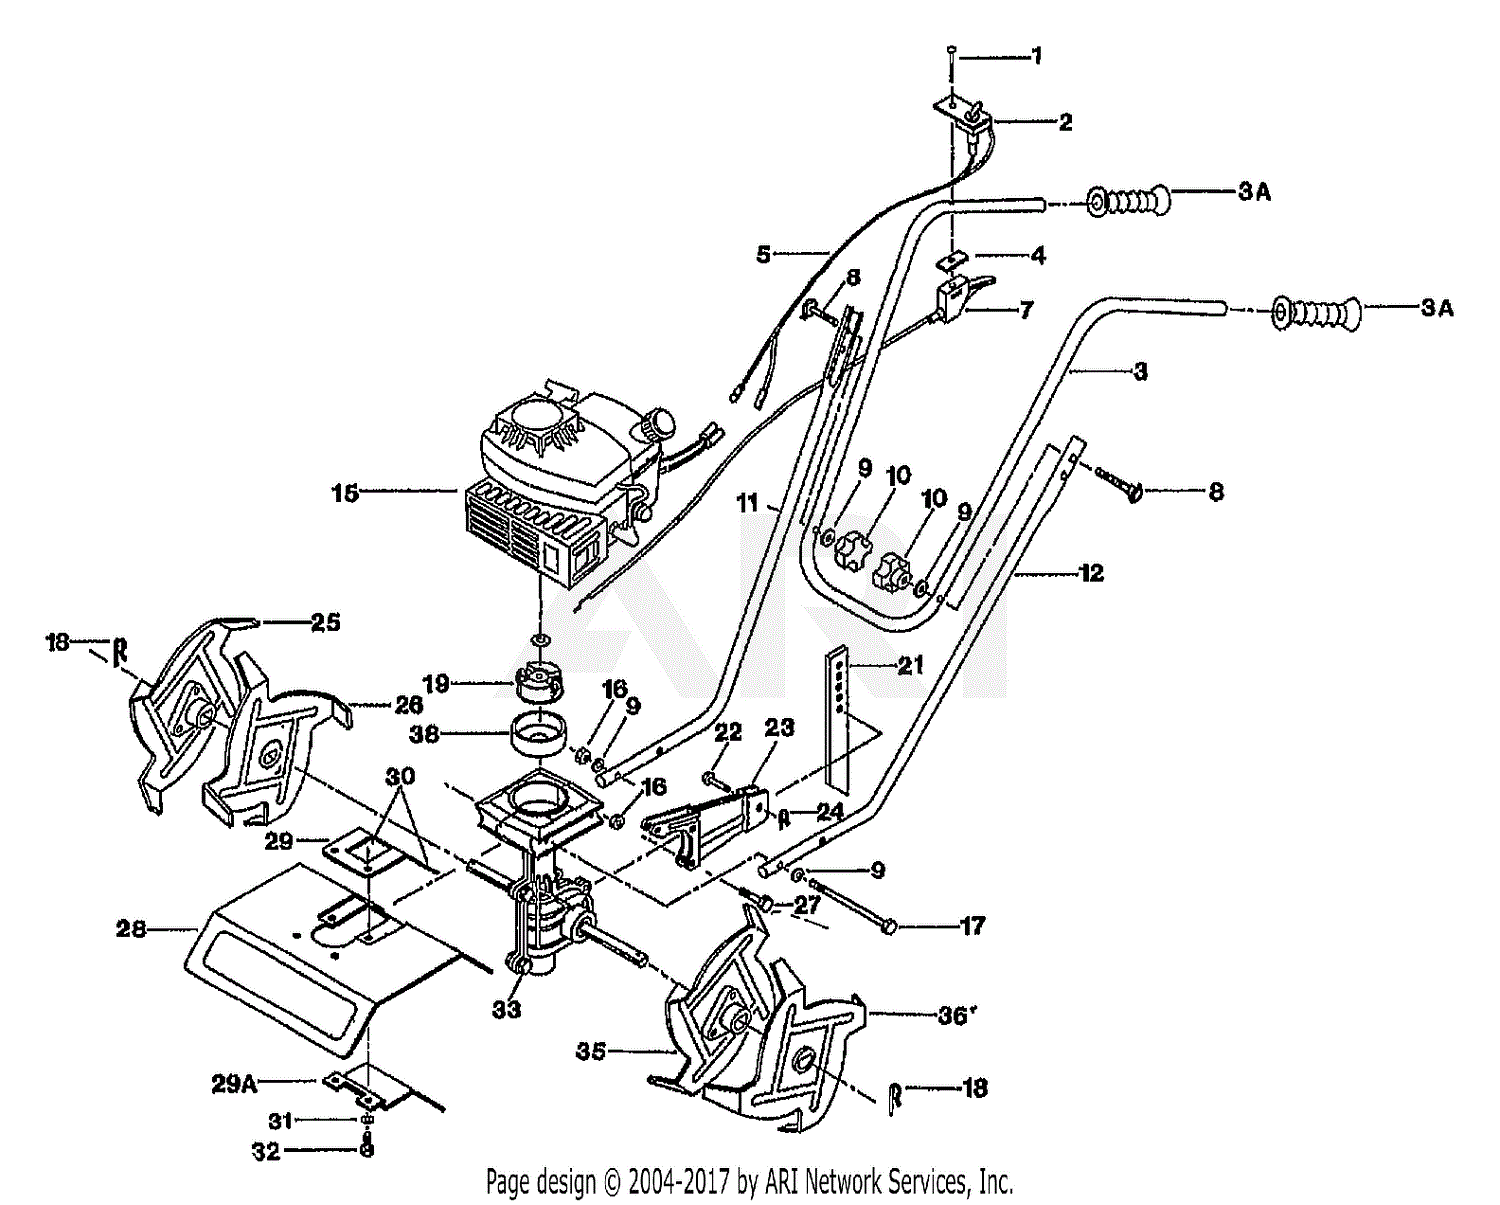 craftsman rear tine tiller transmission diagram